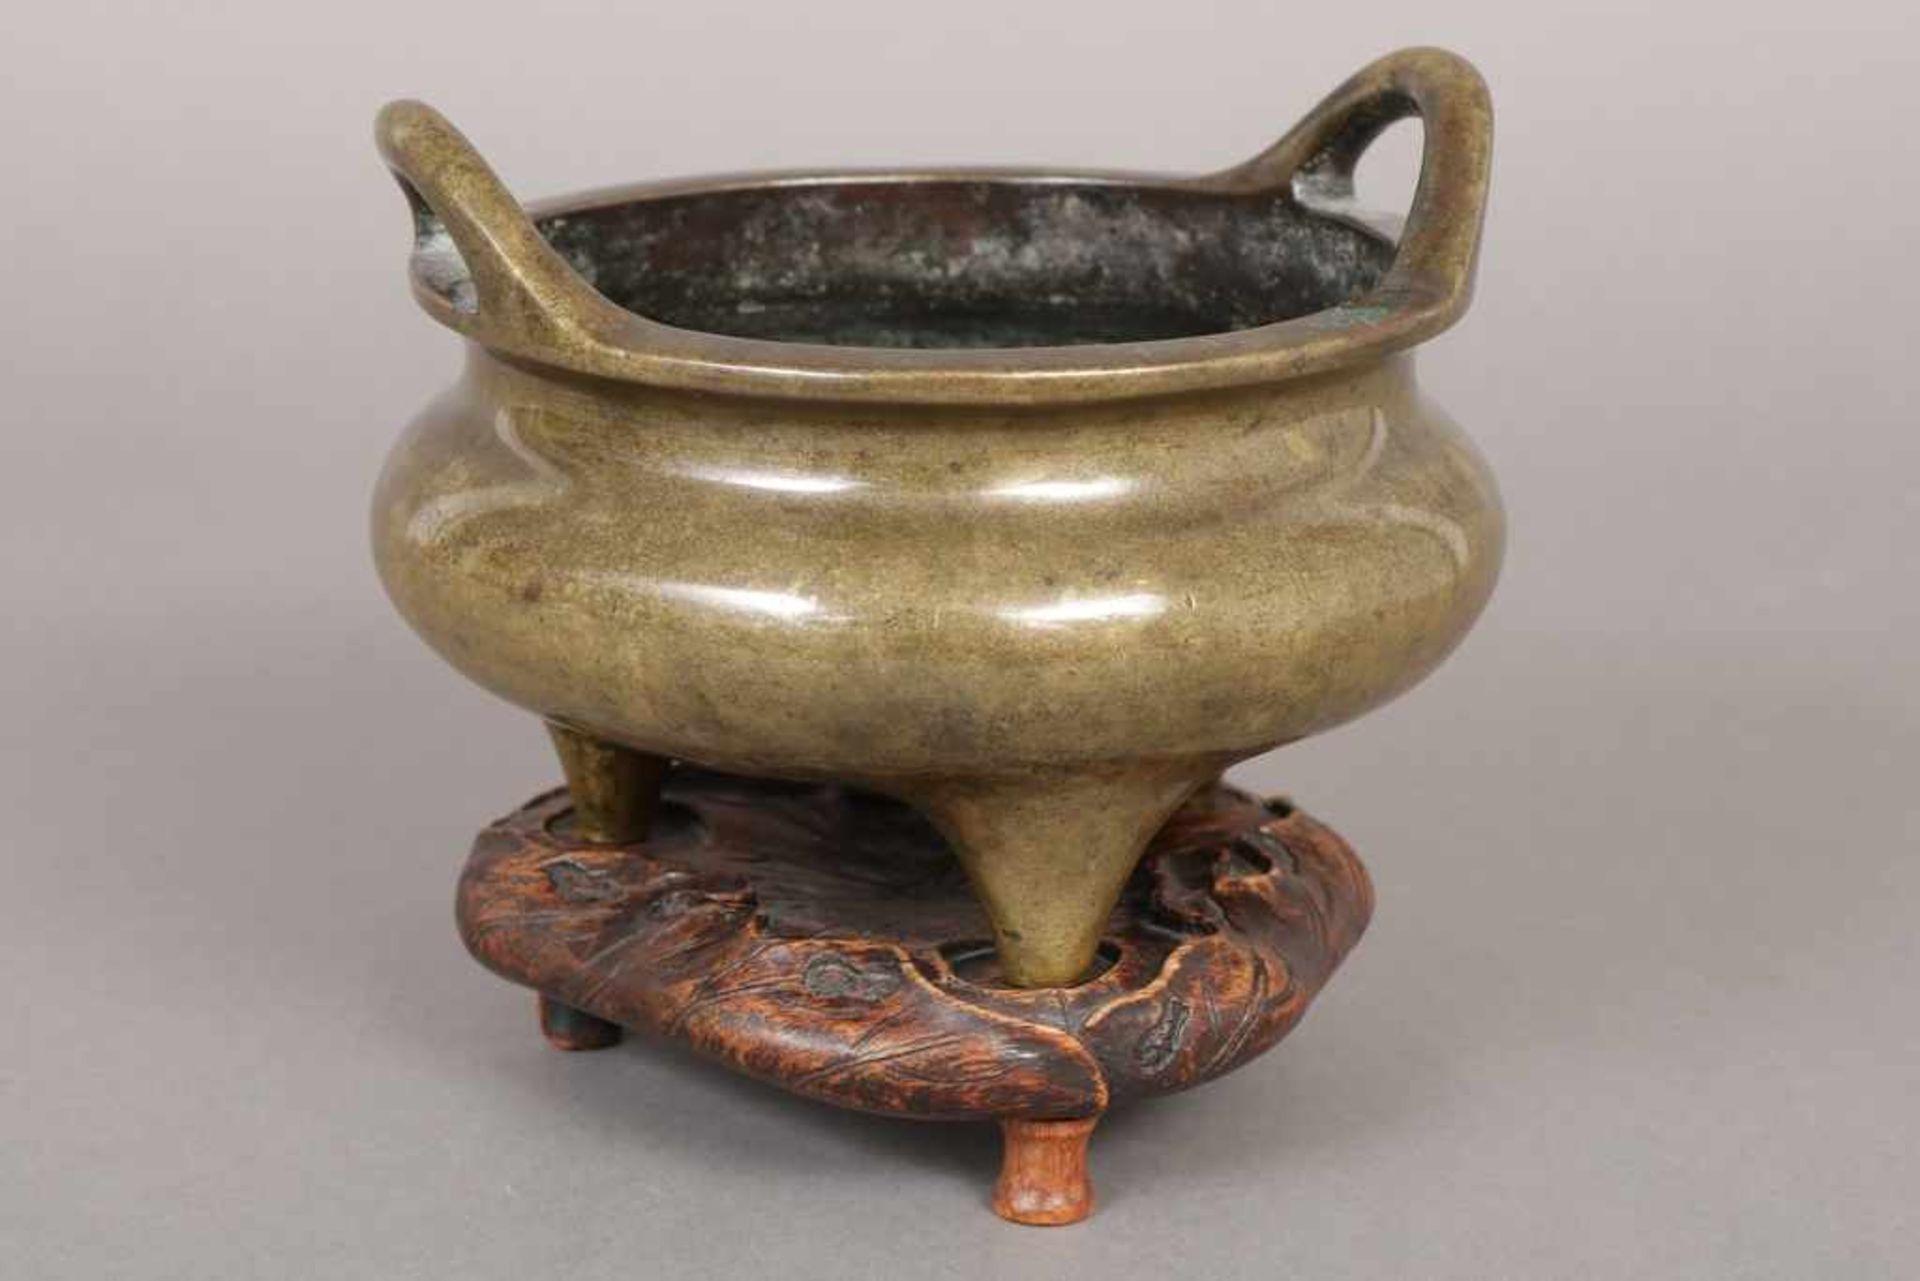 Chinesisches Ritualgefäß Bronze, Qing-Dynastie (1644-1912, hier wohl 18. Jhdt.), 3-Fuß-Form, rund,